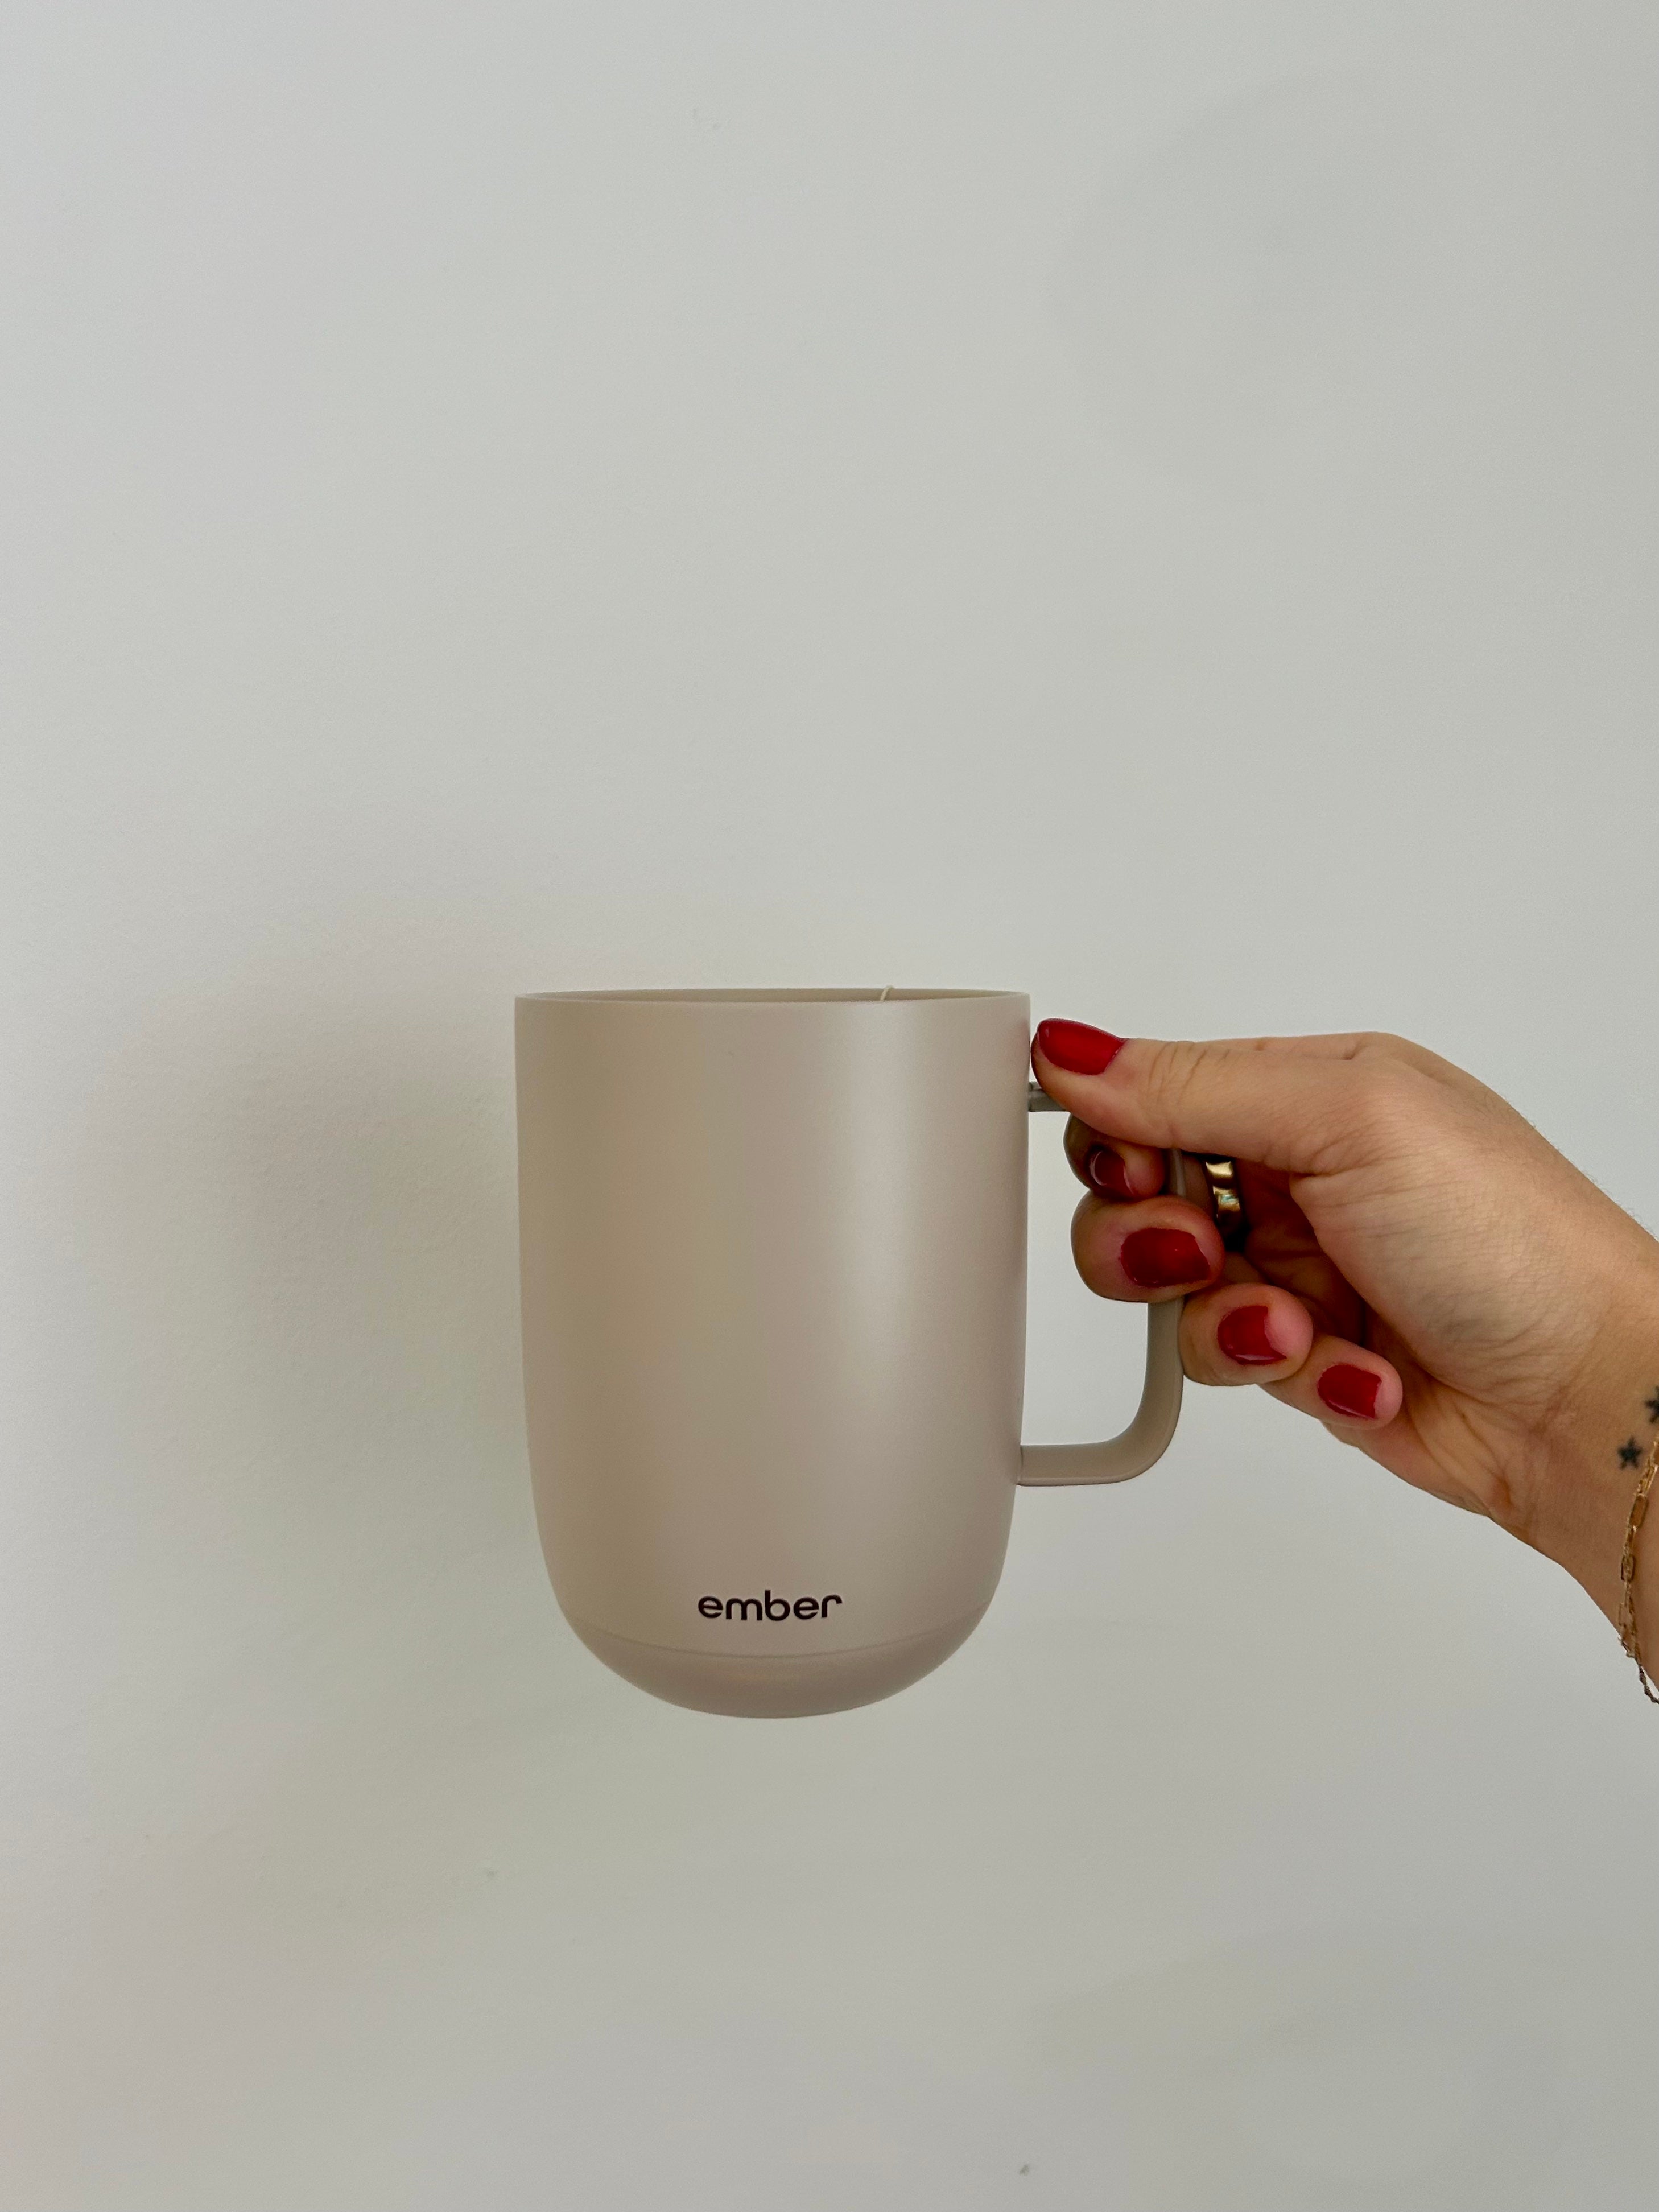 Ember Travel Mug 2 Review - MacRumors